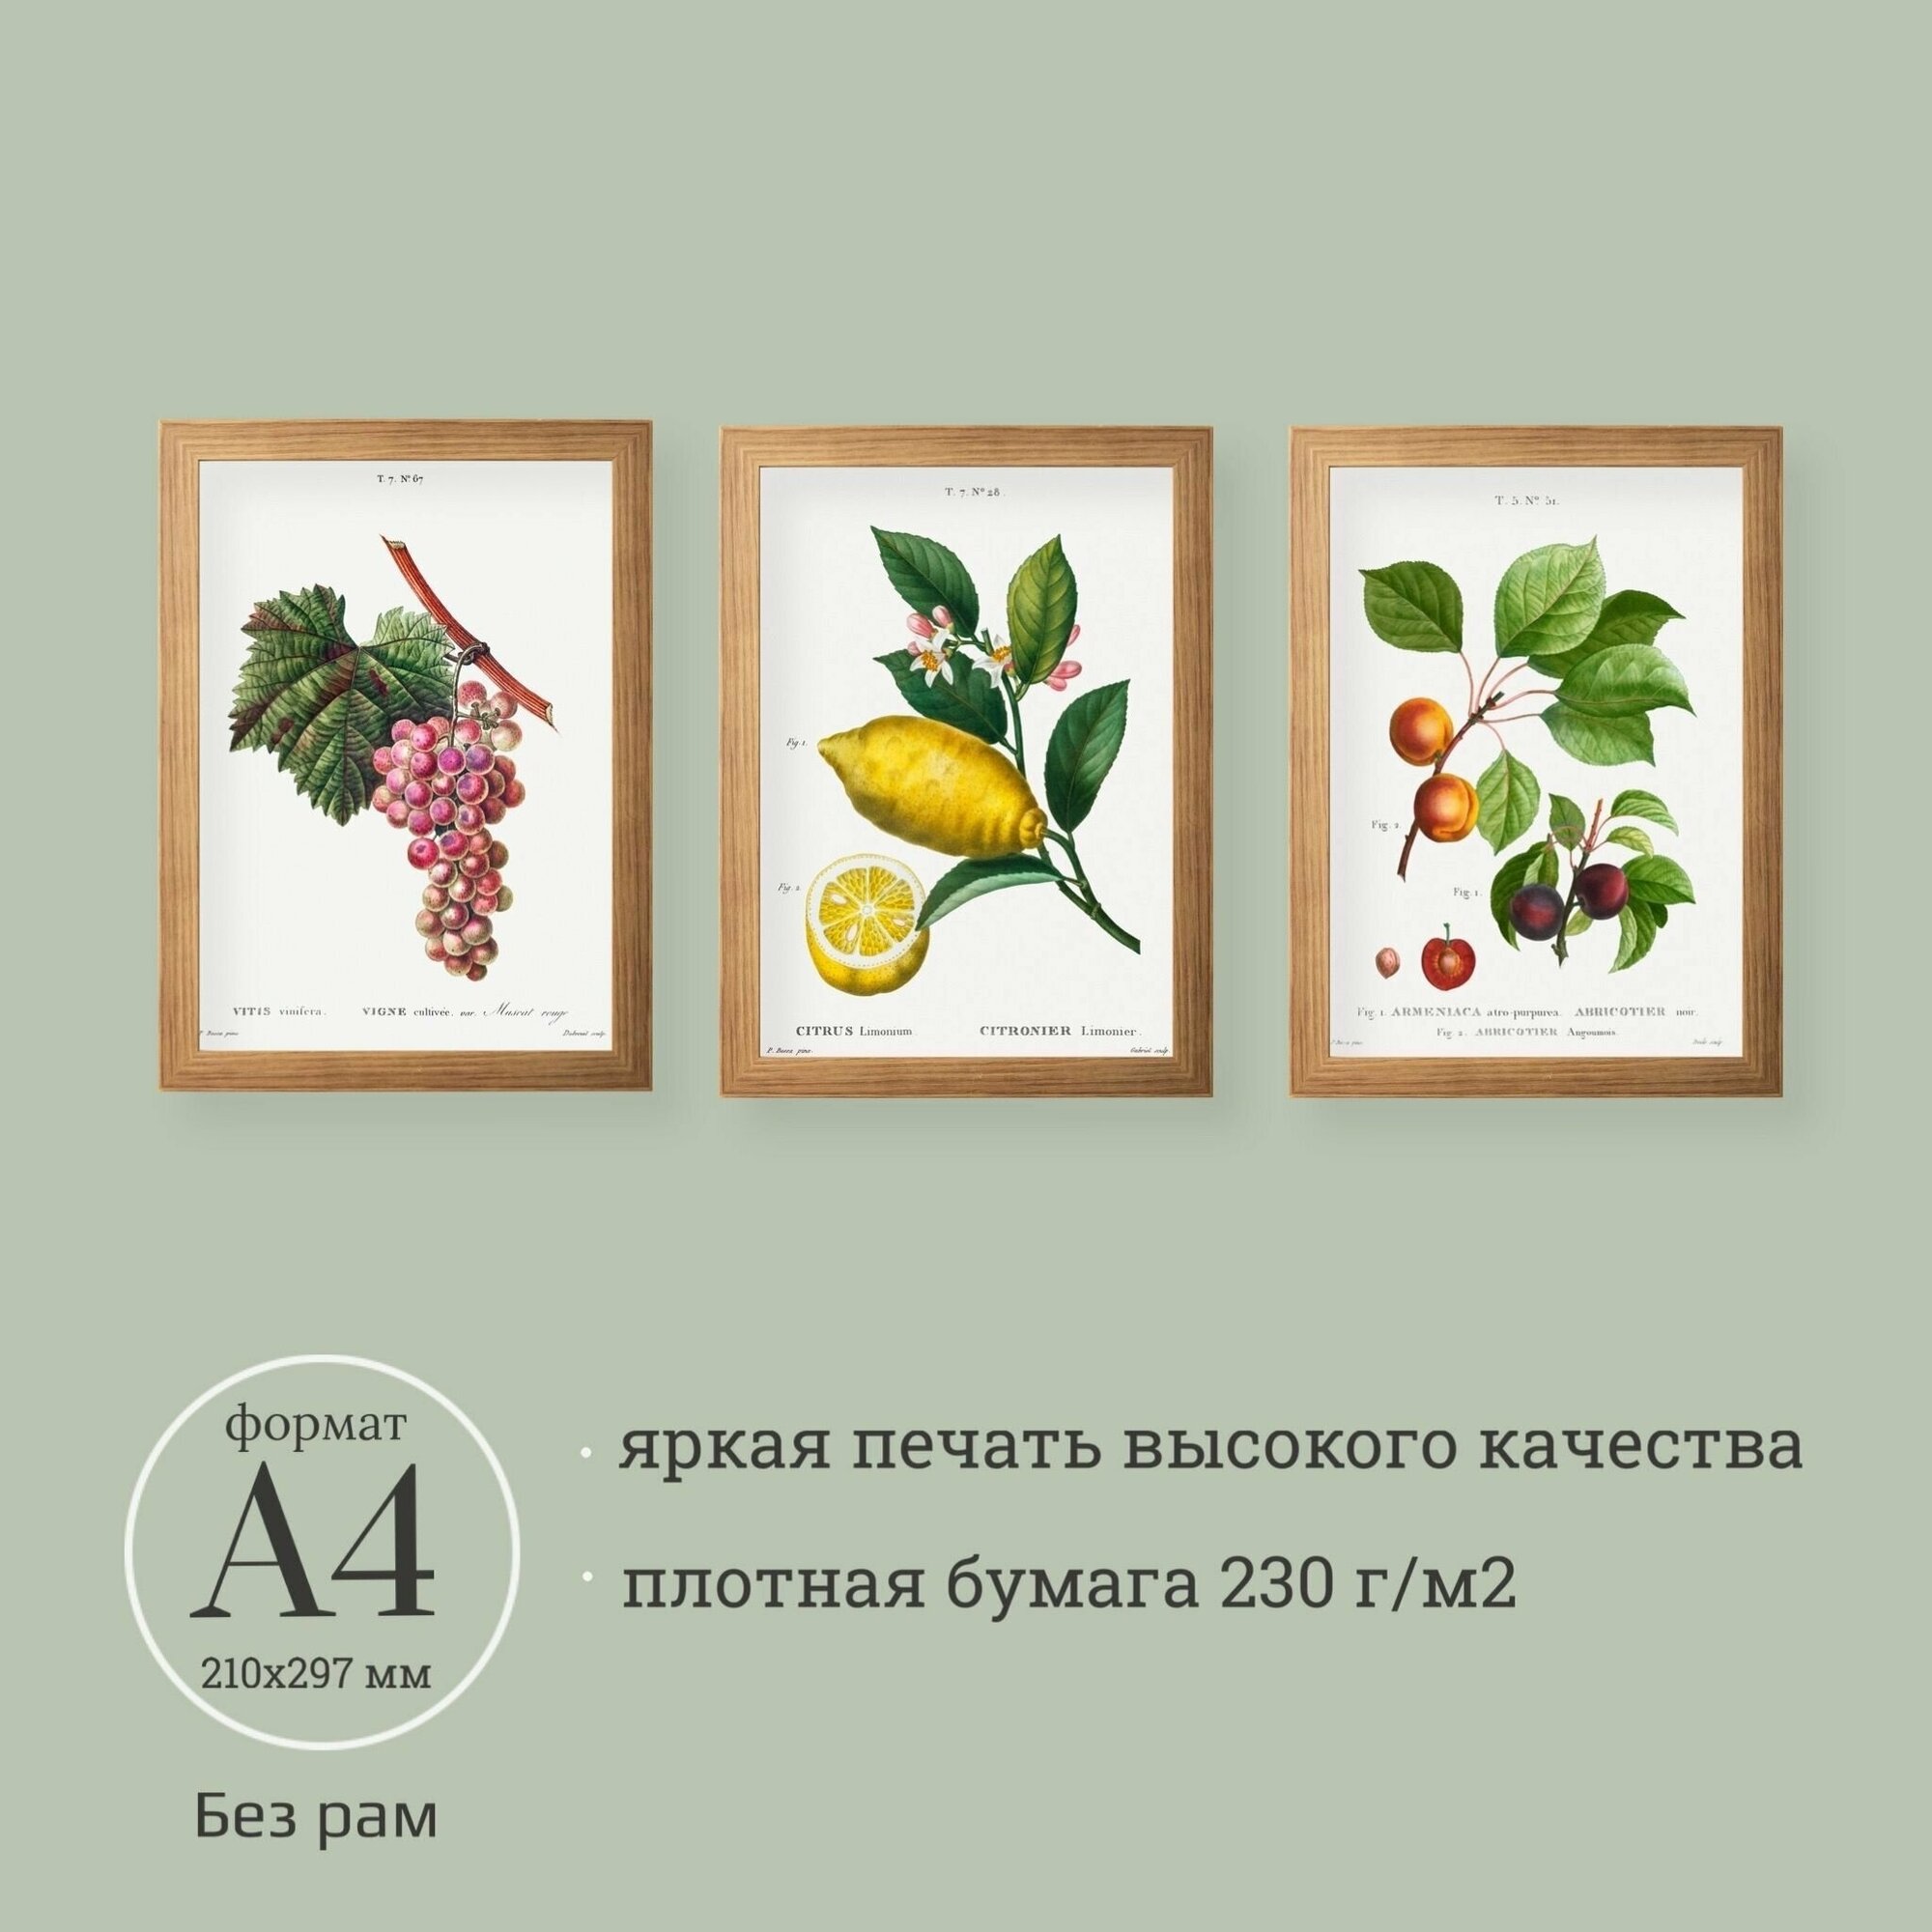 Ботанические иллюстрации 3 шт. А4